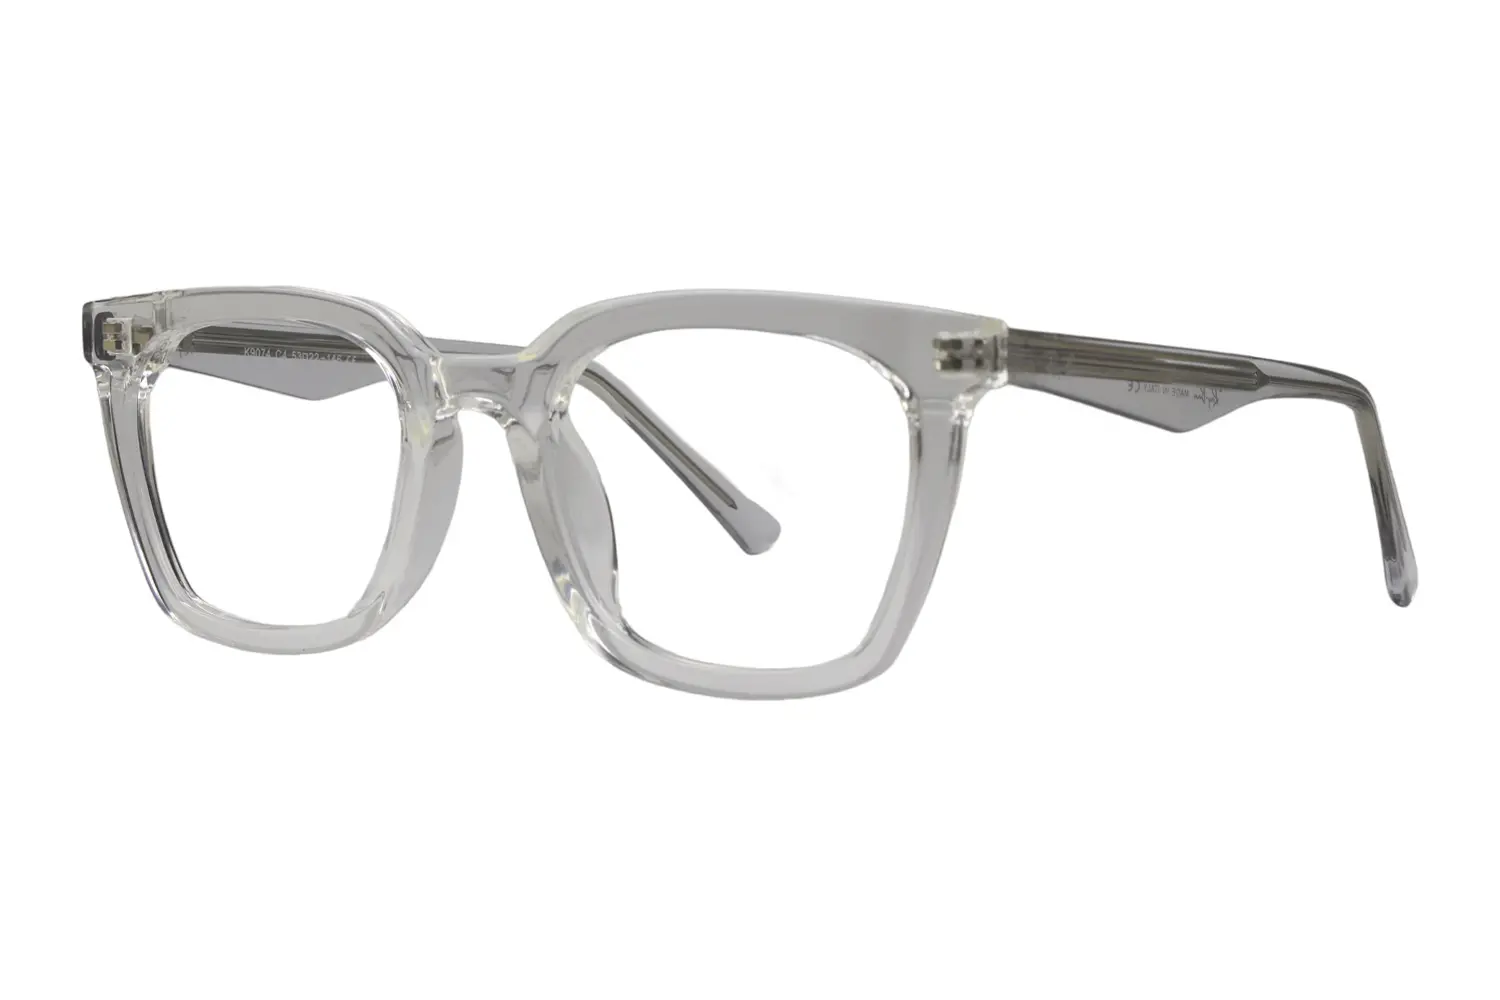 عینک طبی RAY-BAN مدلK9074 C4 - دکترعینک